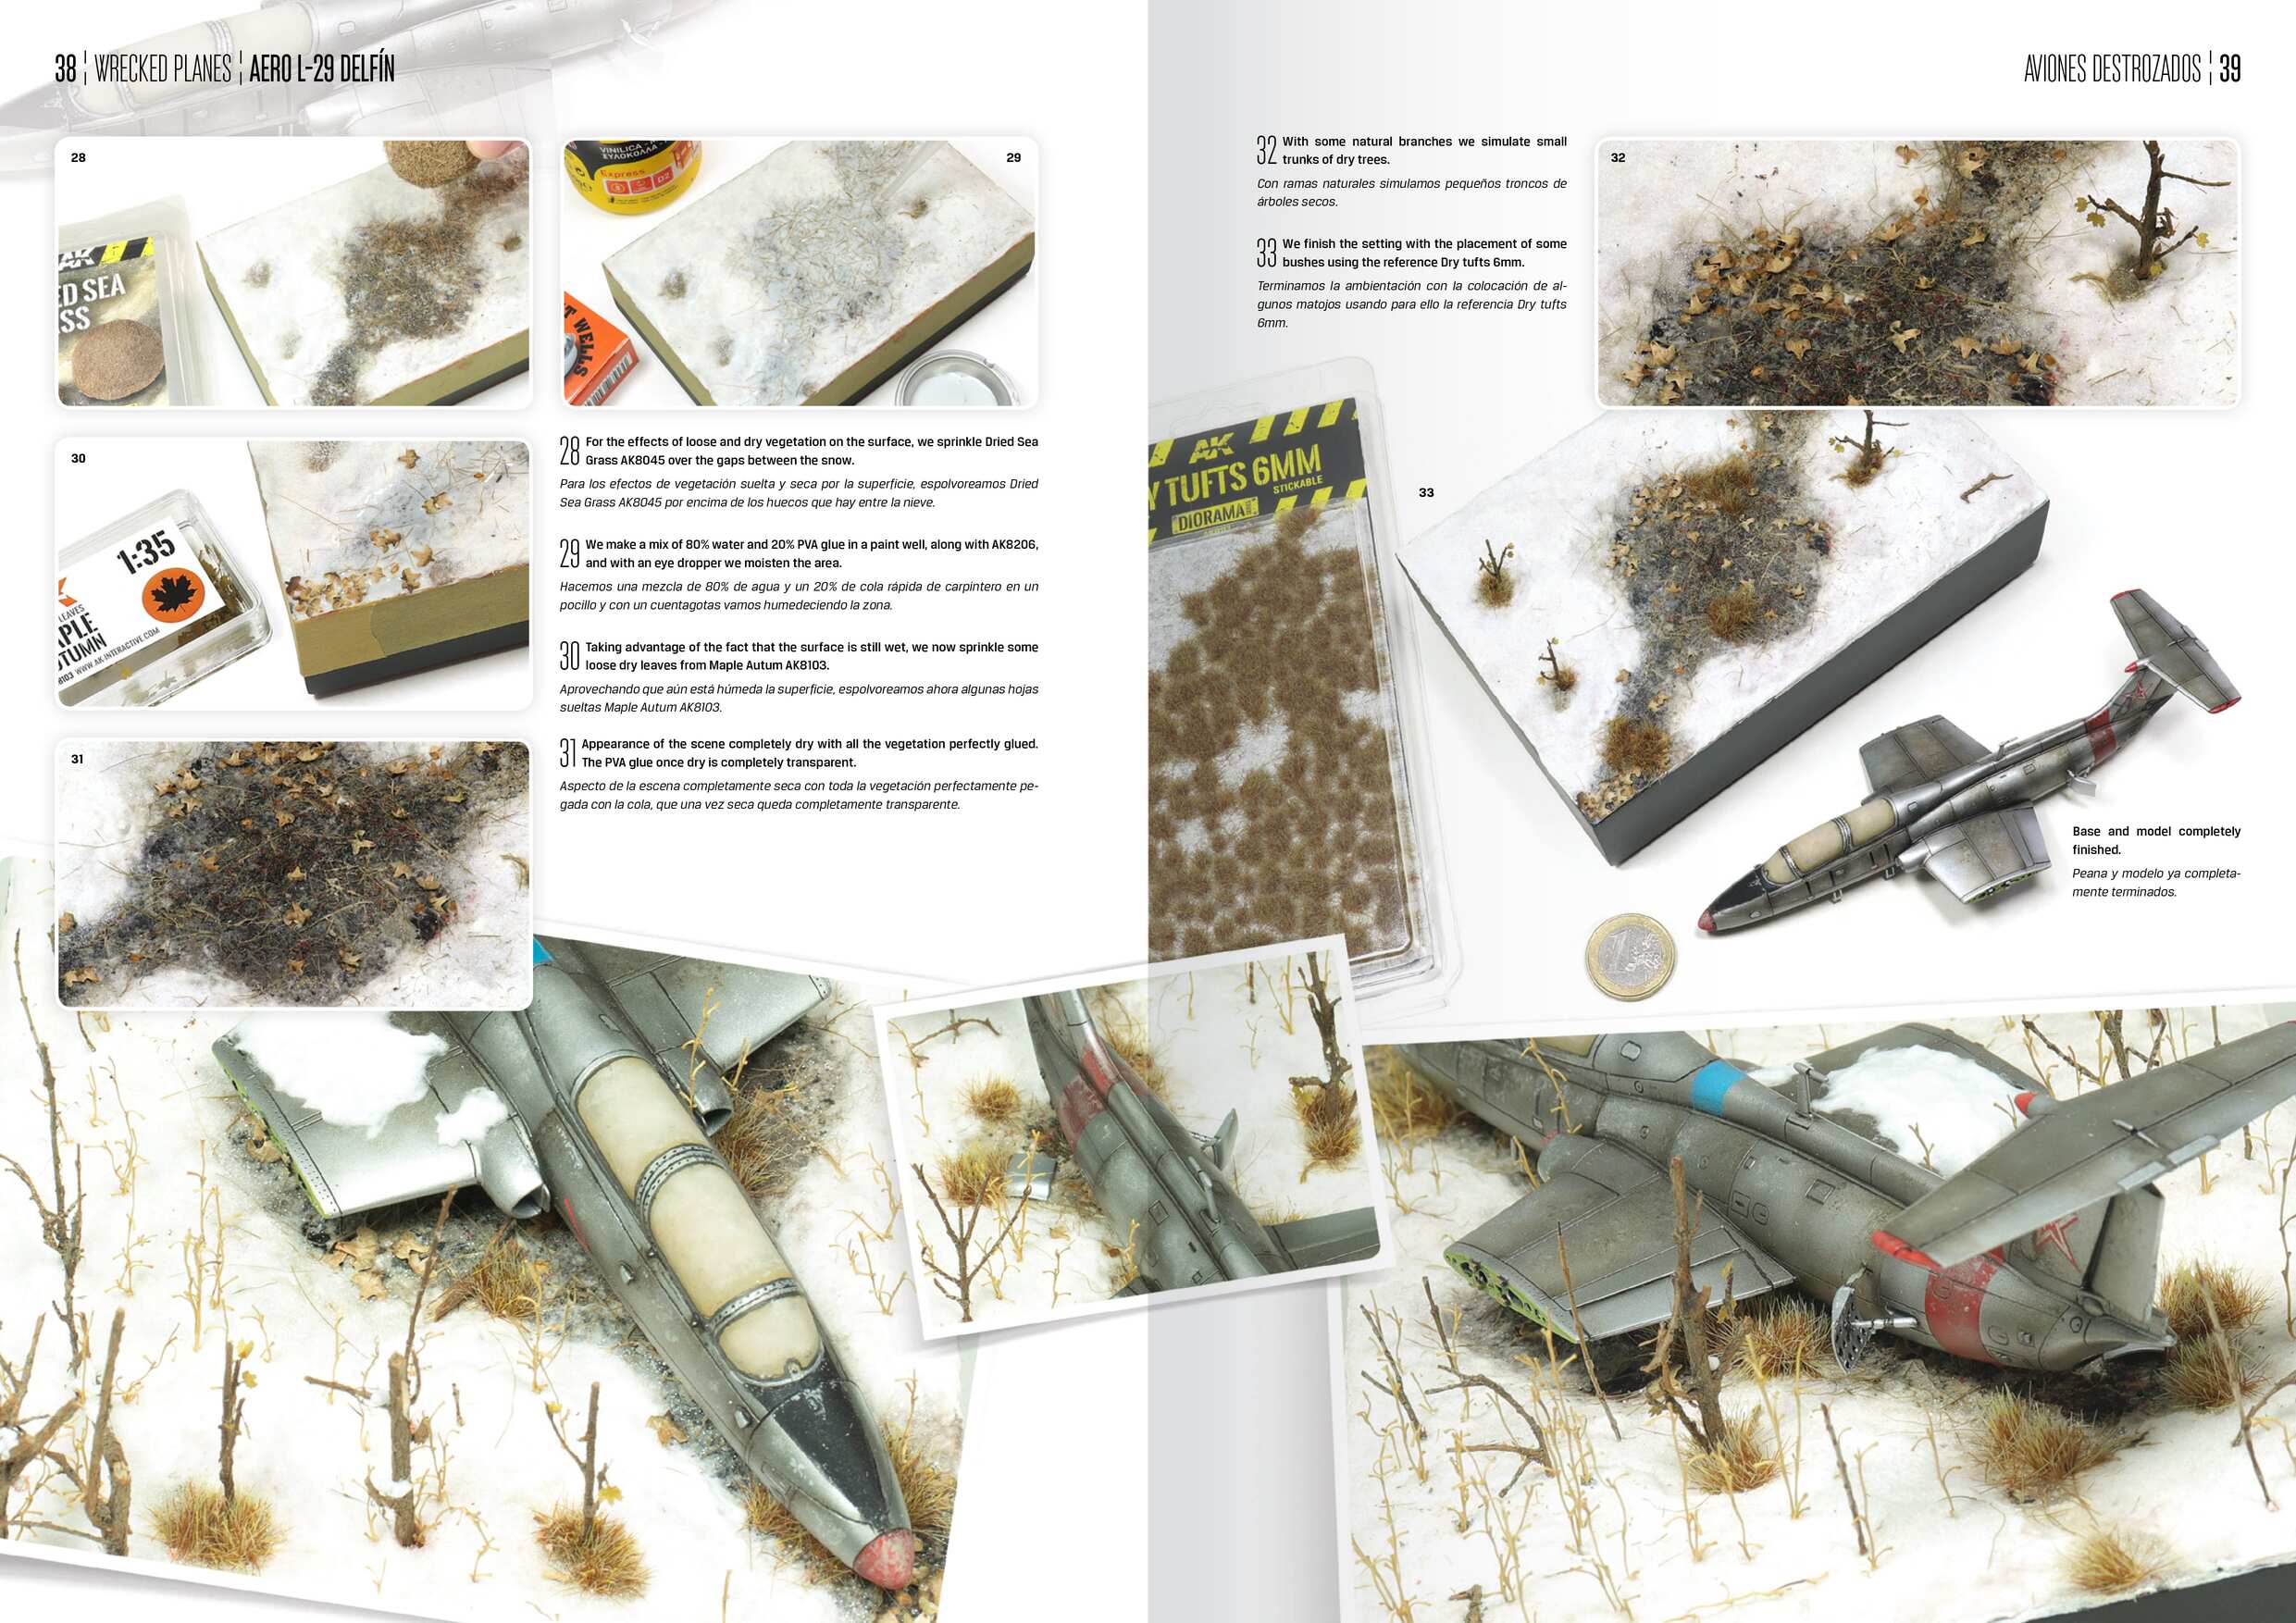 AK918 AK Interactive Книга WRECKED PLANES - AVIONES DESTROZADOS (EN)